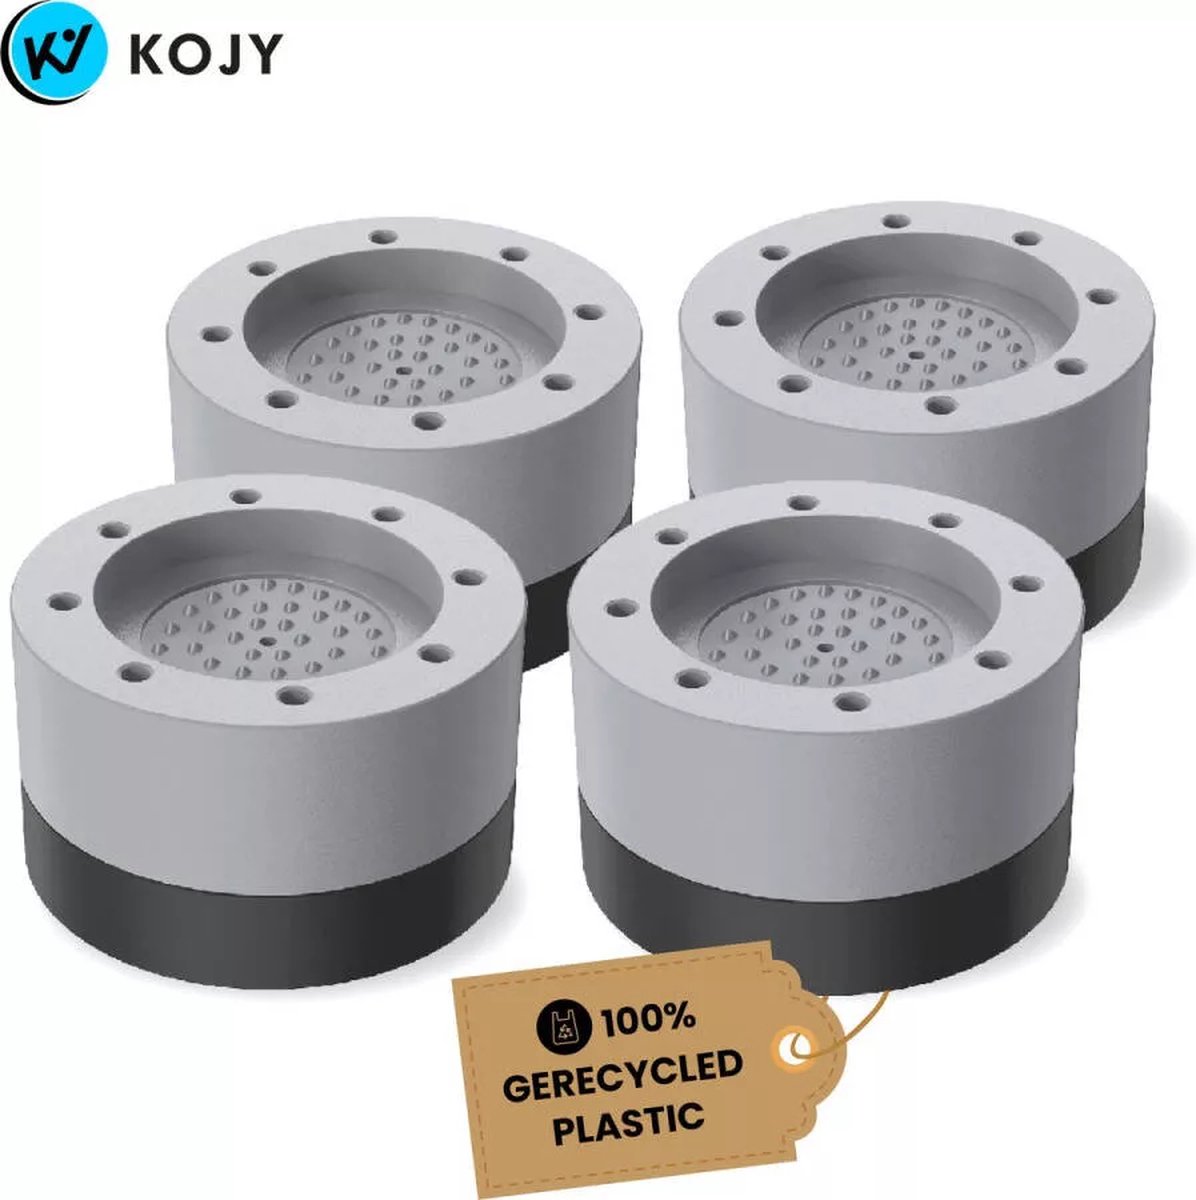 KOJY Wasmachine dempers - Wasmachine Verhoger - Stapelbaar - geschikt voor wasmachine en wasdroger - KOJY